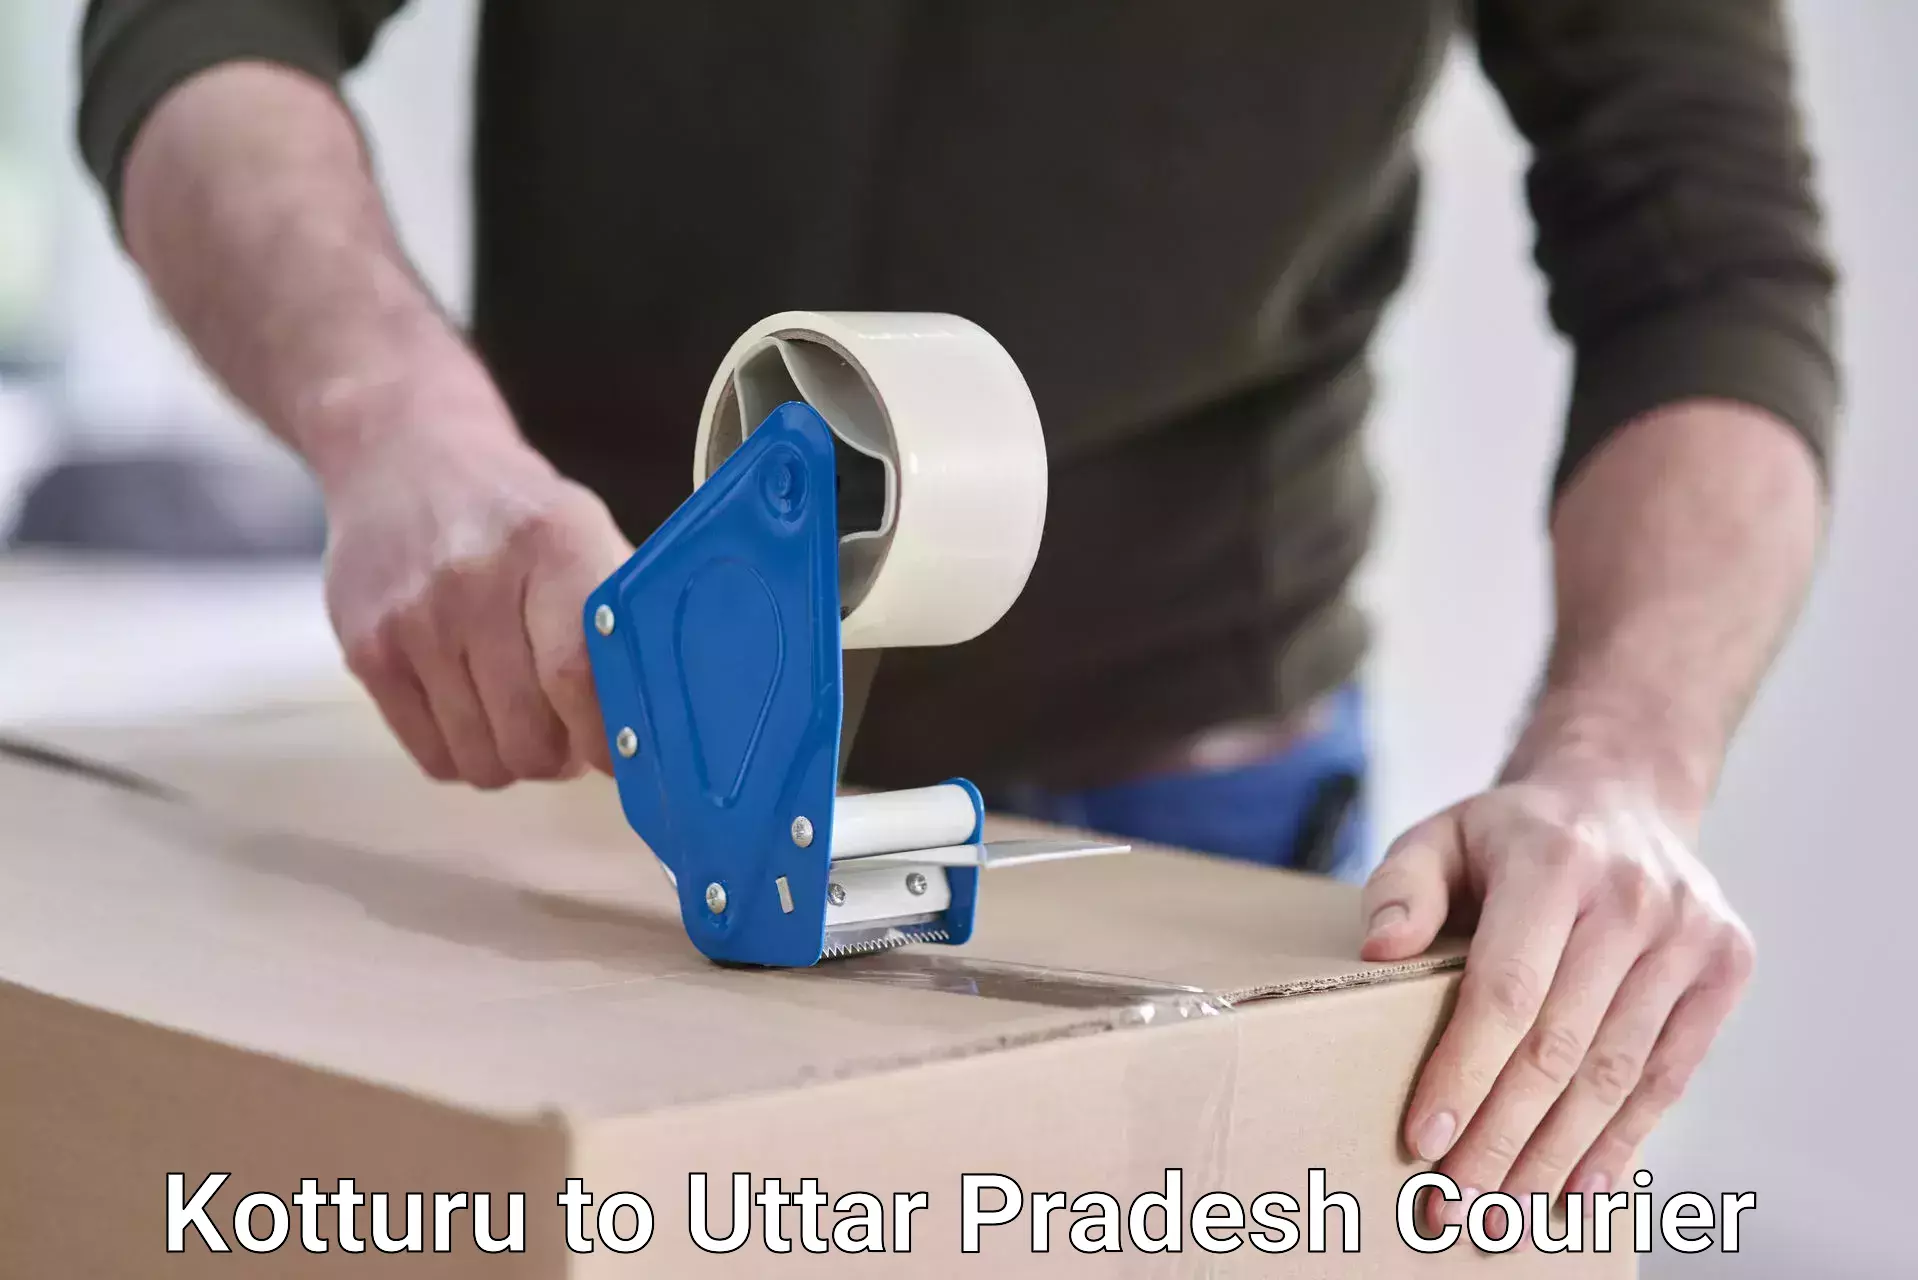 Courier service innovation Kotturu to Uttar Pradesh